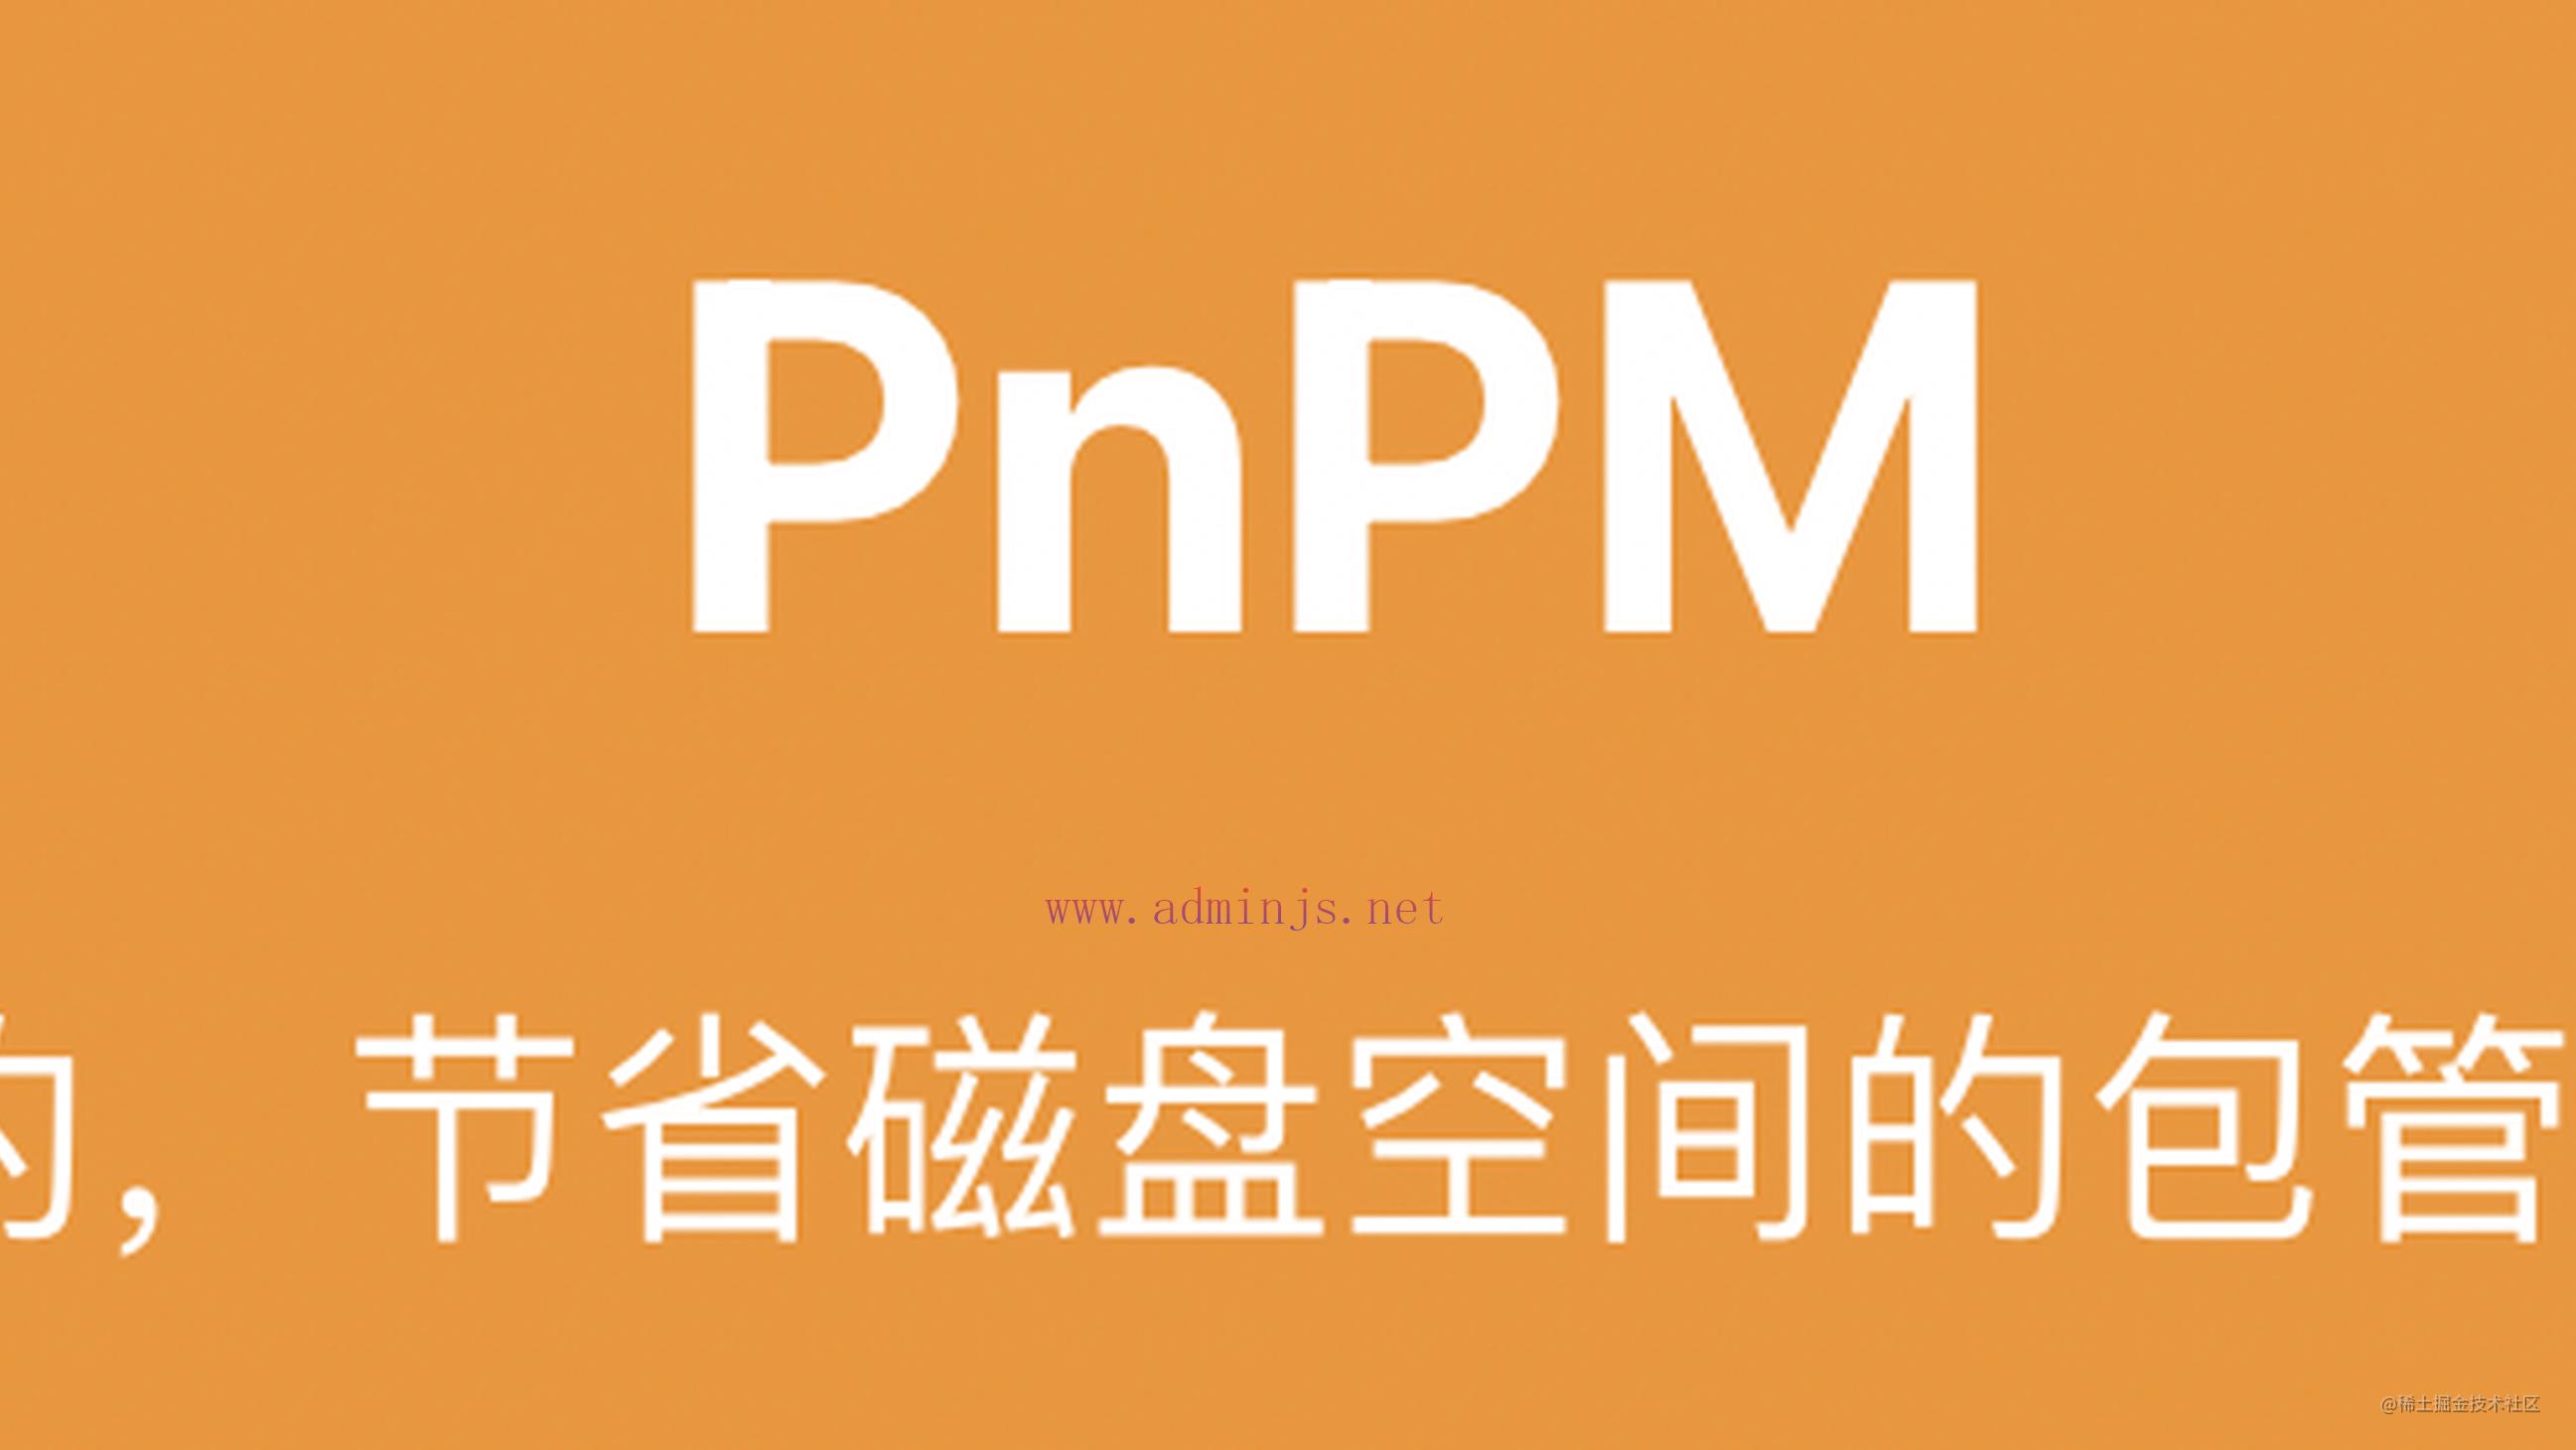 pnpm 是如何解决这两个难题的?